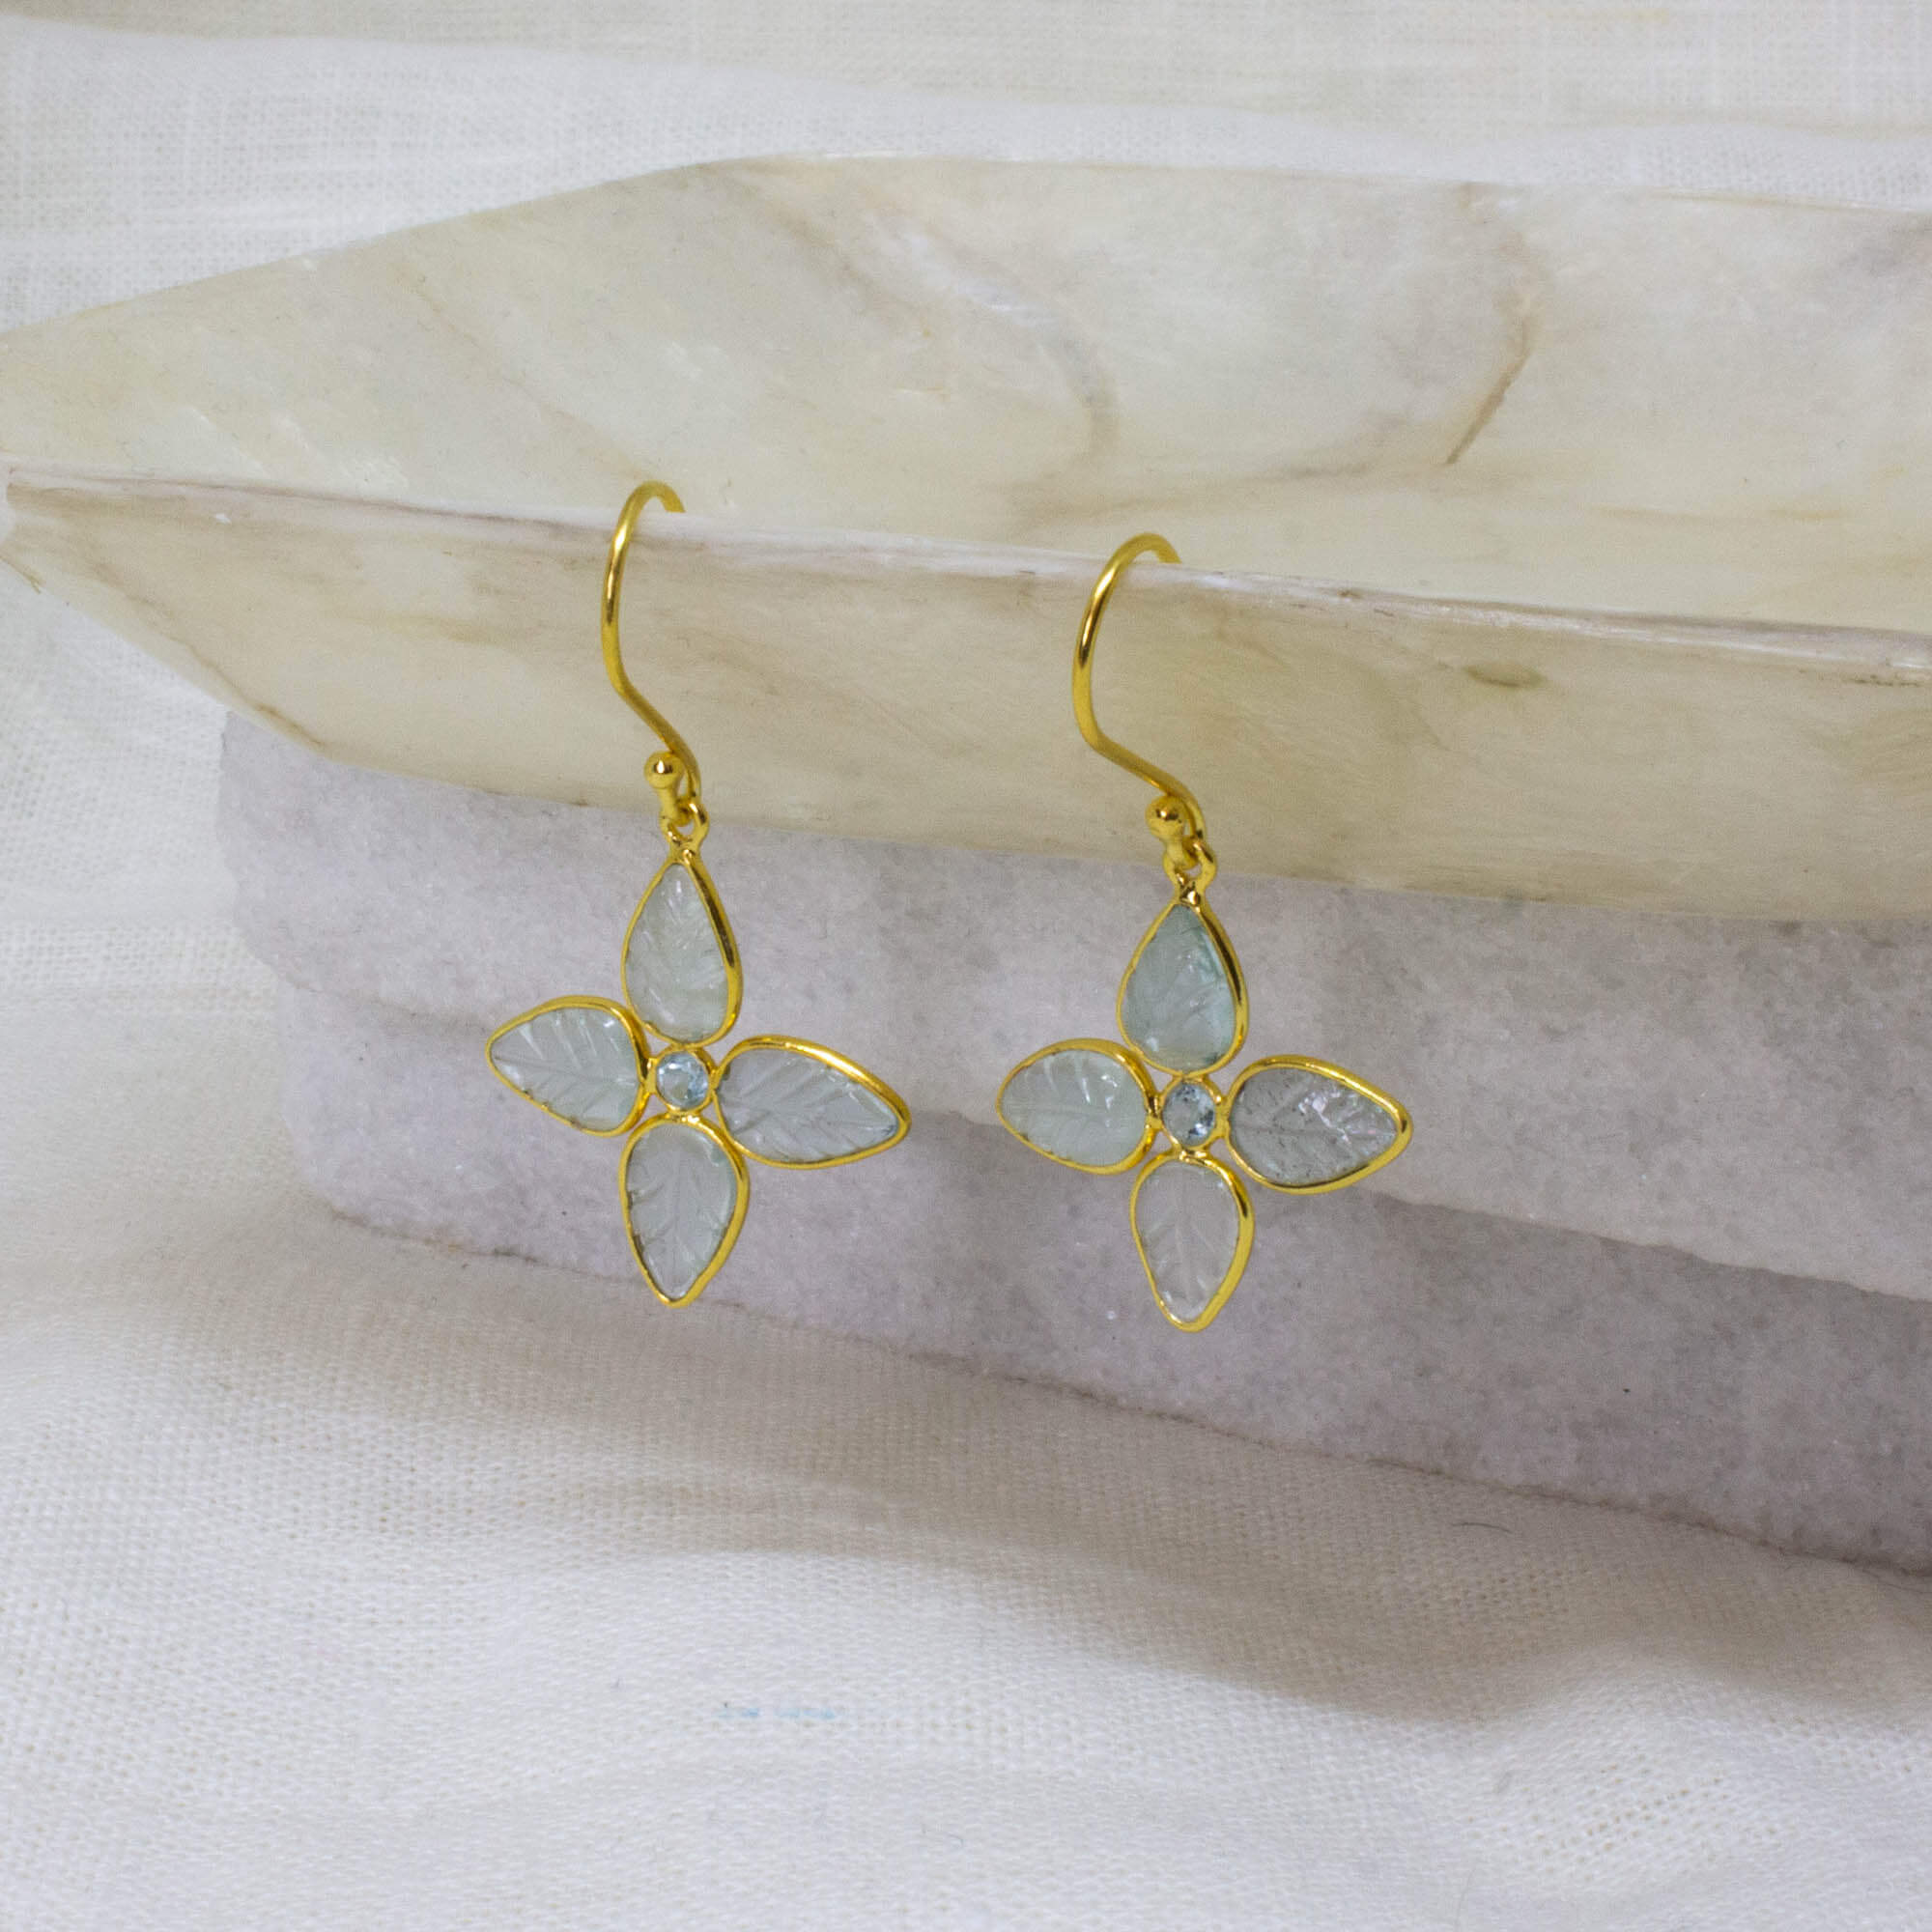 Carved aquamarine gemstone flower earrings in 18k gold vermeil - Beyond Biasa